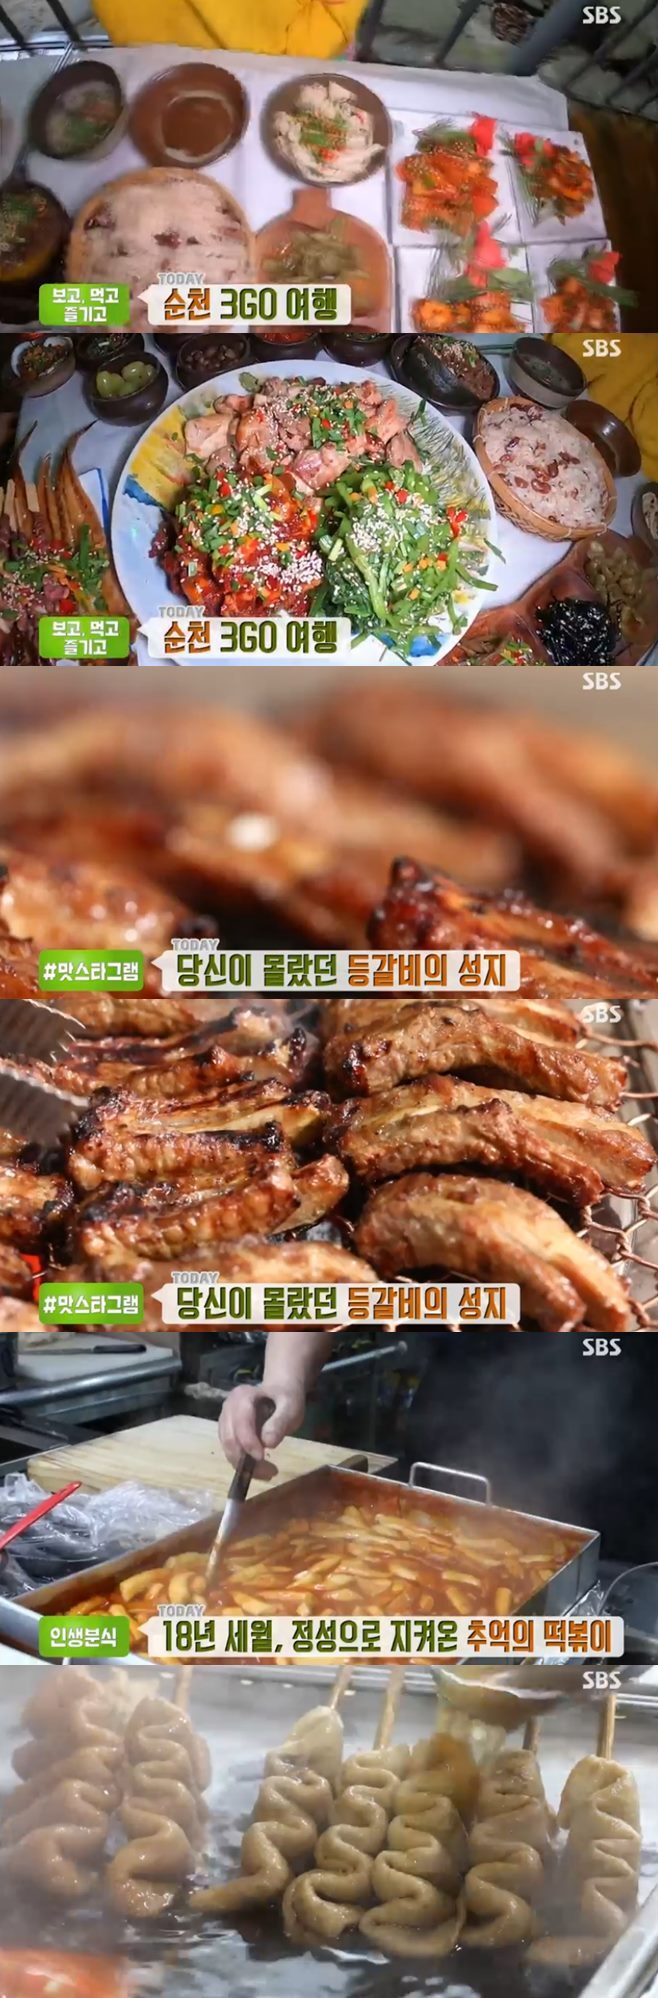 ‘생방송투데이’ 등갈비(윤대감참숯등갈비)+떡볶이(김만희분식)+순천 닭구이(산수정산장) 맛집 가족사랑김치반찬